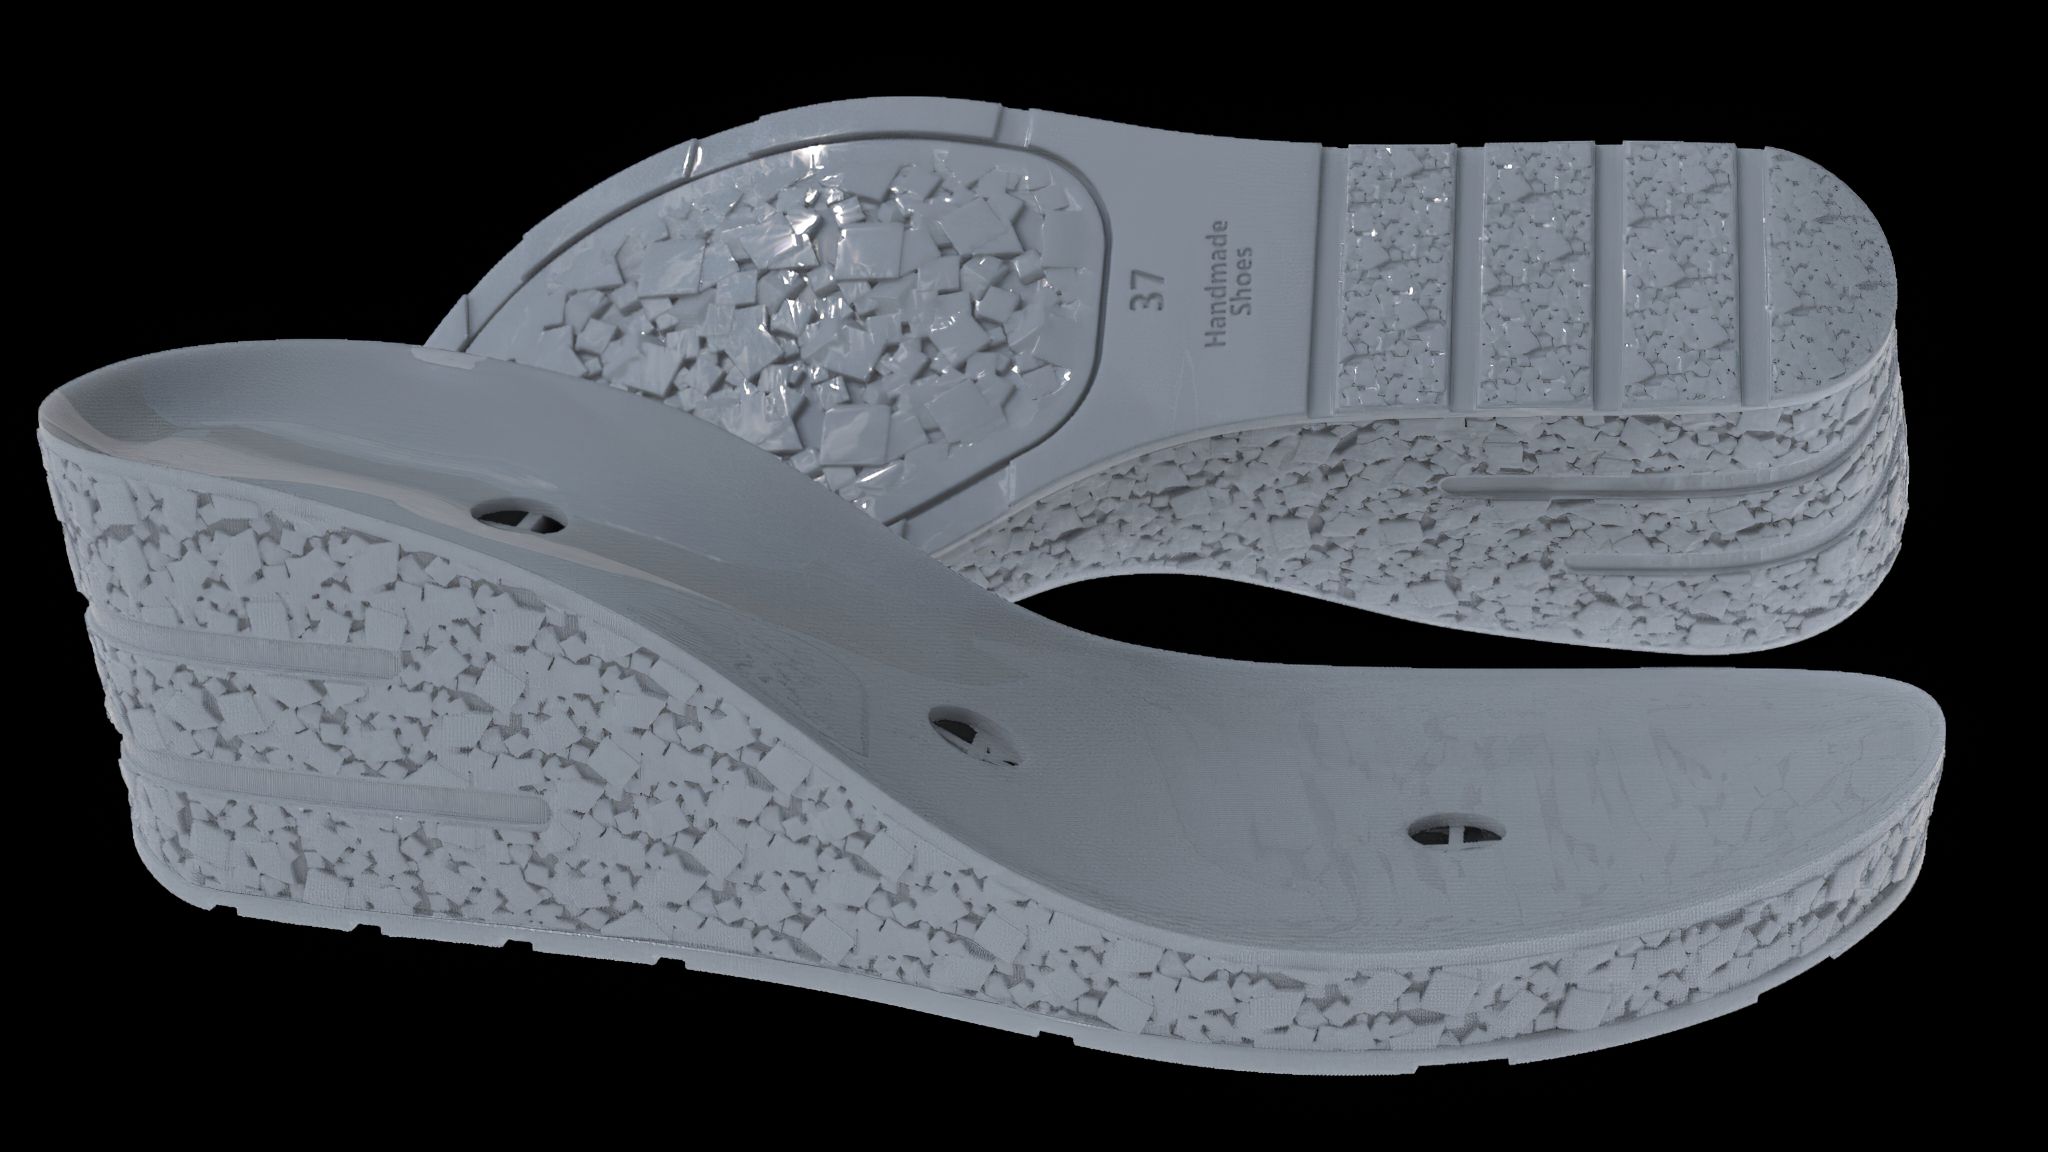 untitled.338-gigapixel.jpg Télécharger fichier STL MAQUETTE DE SEMELLE DE CHAUSSURE POUR L'IMPRESSION 3D SLA • Design pour impression 3D, shoesjewelerydesign